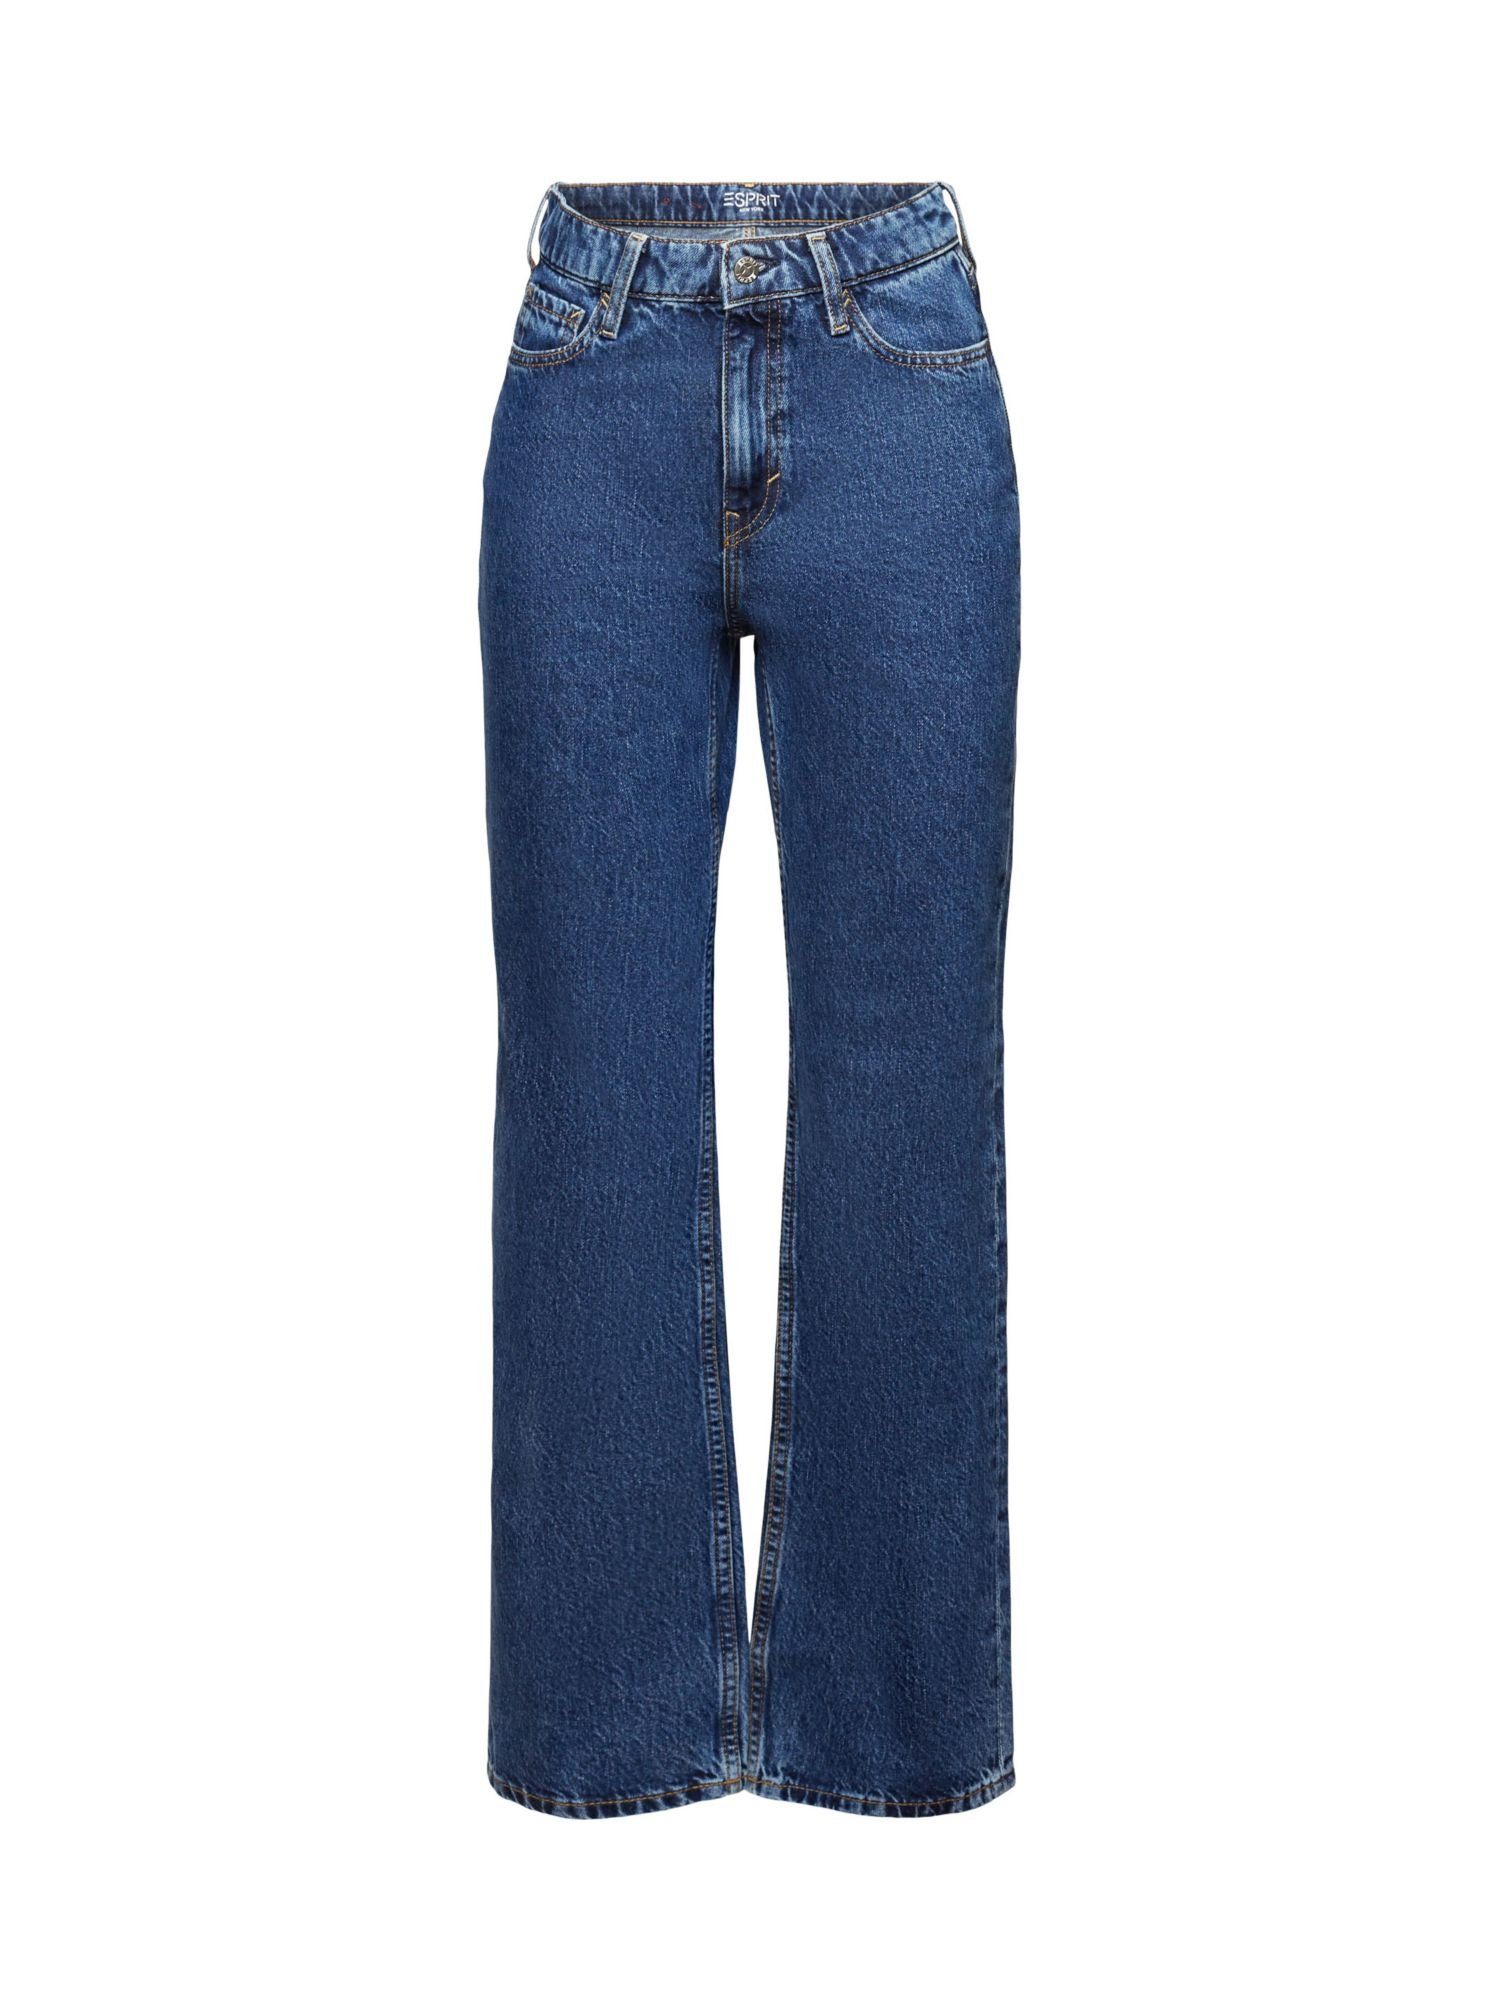 Esprit Straight-Jeans mit Retro-Jeans und Bund hohem Passform gerader